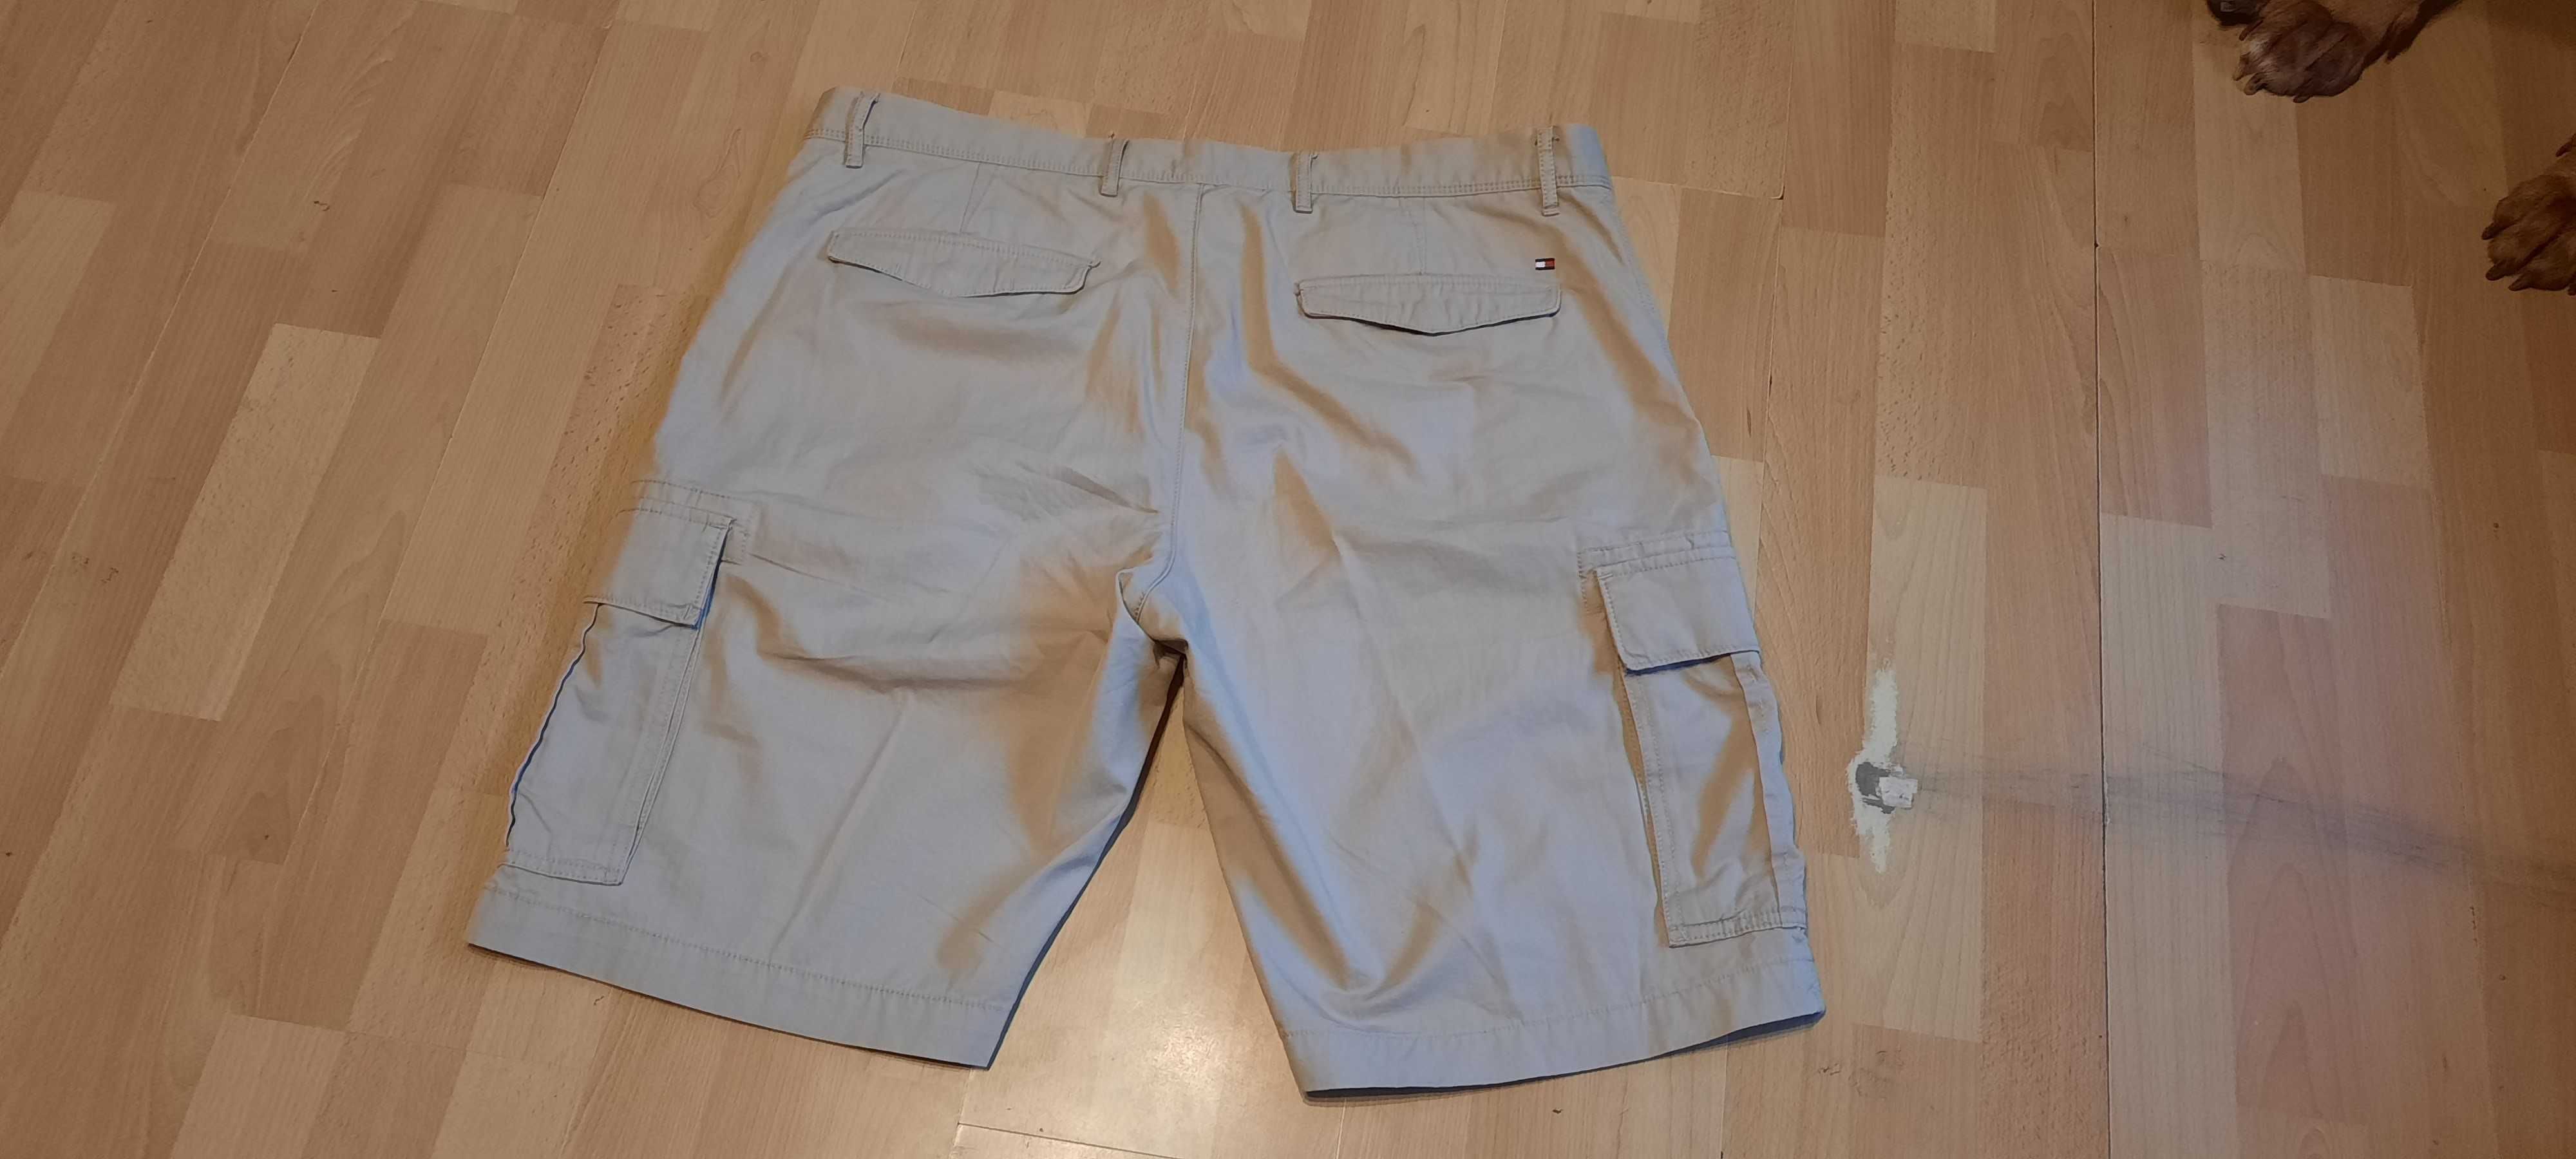 Krótkie spodnie bojówki TOMMY HILFIGER r.XL (W40) stan idealny